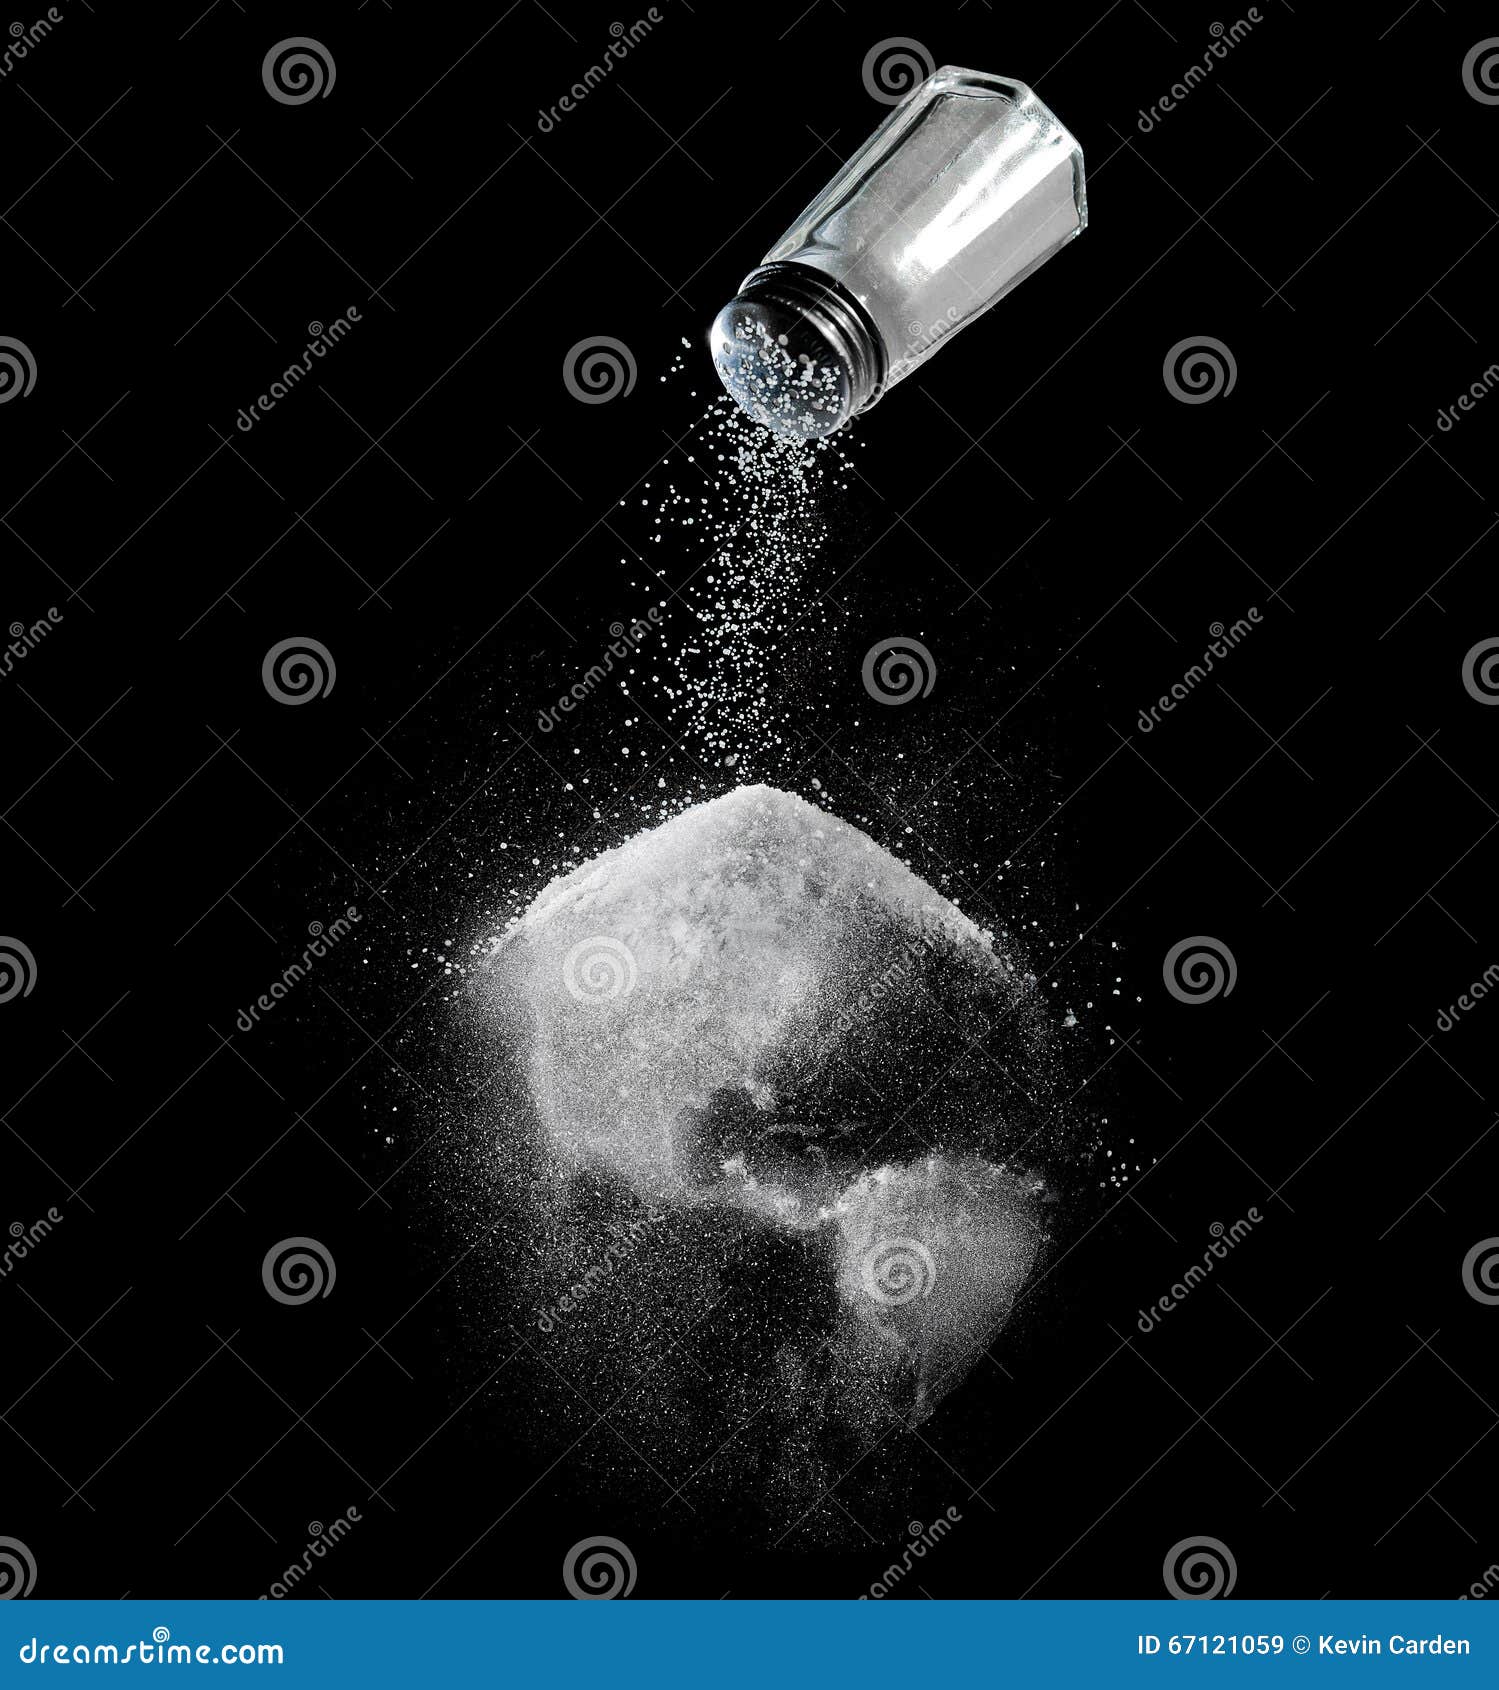 salt of the earth